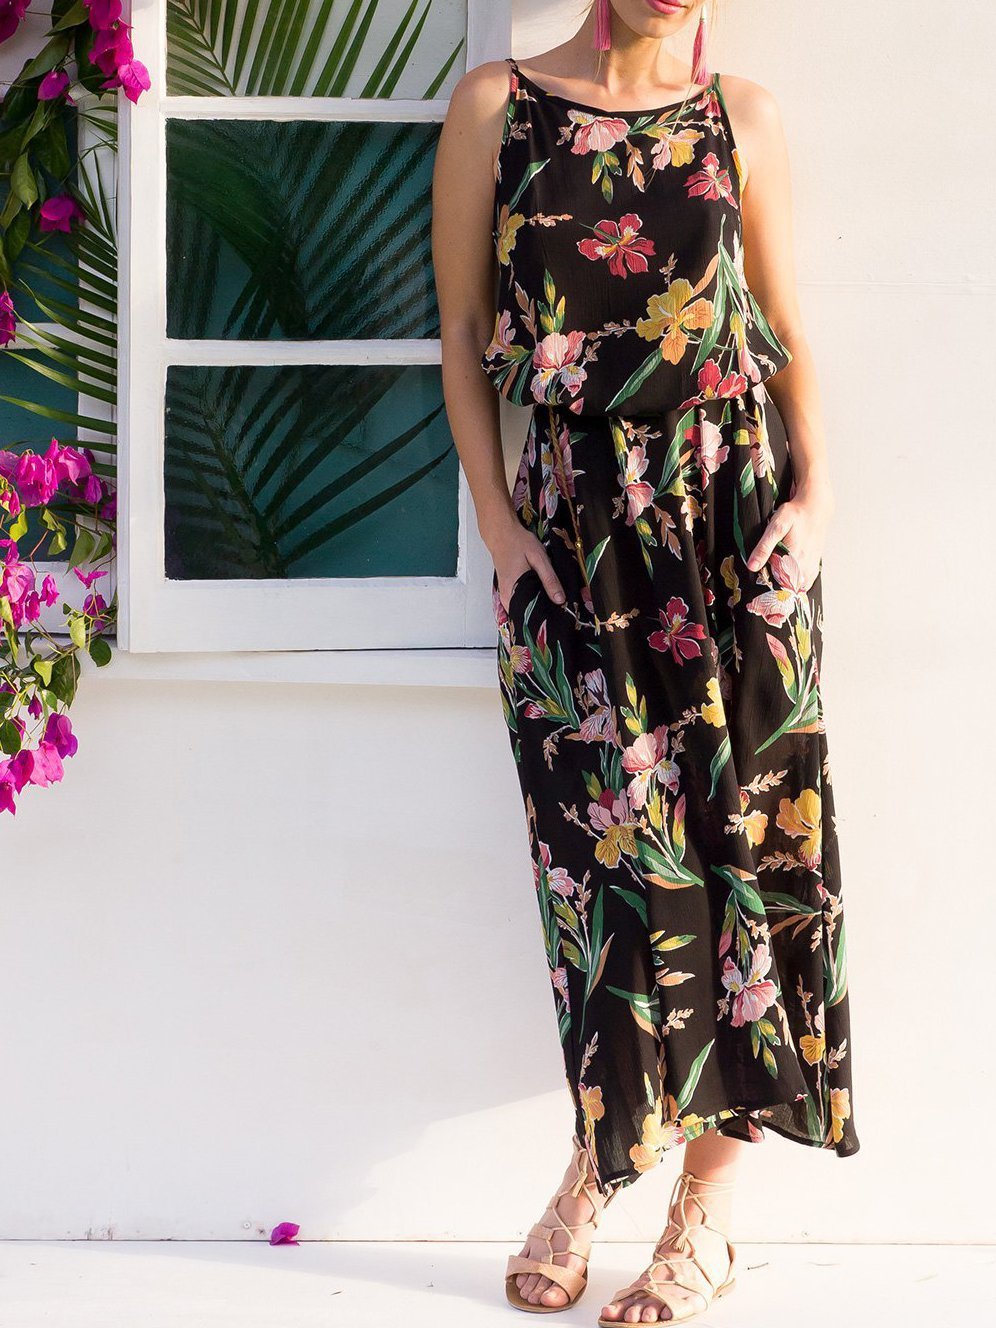 2018 Summer Sleeveless Floral Print Beach Maxi Dress